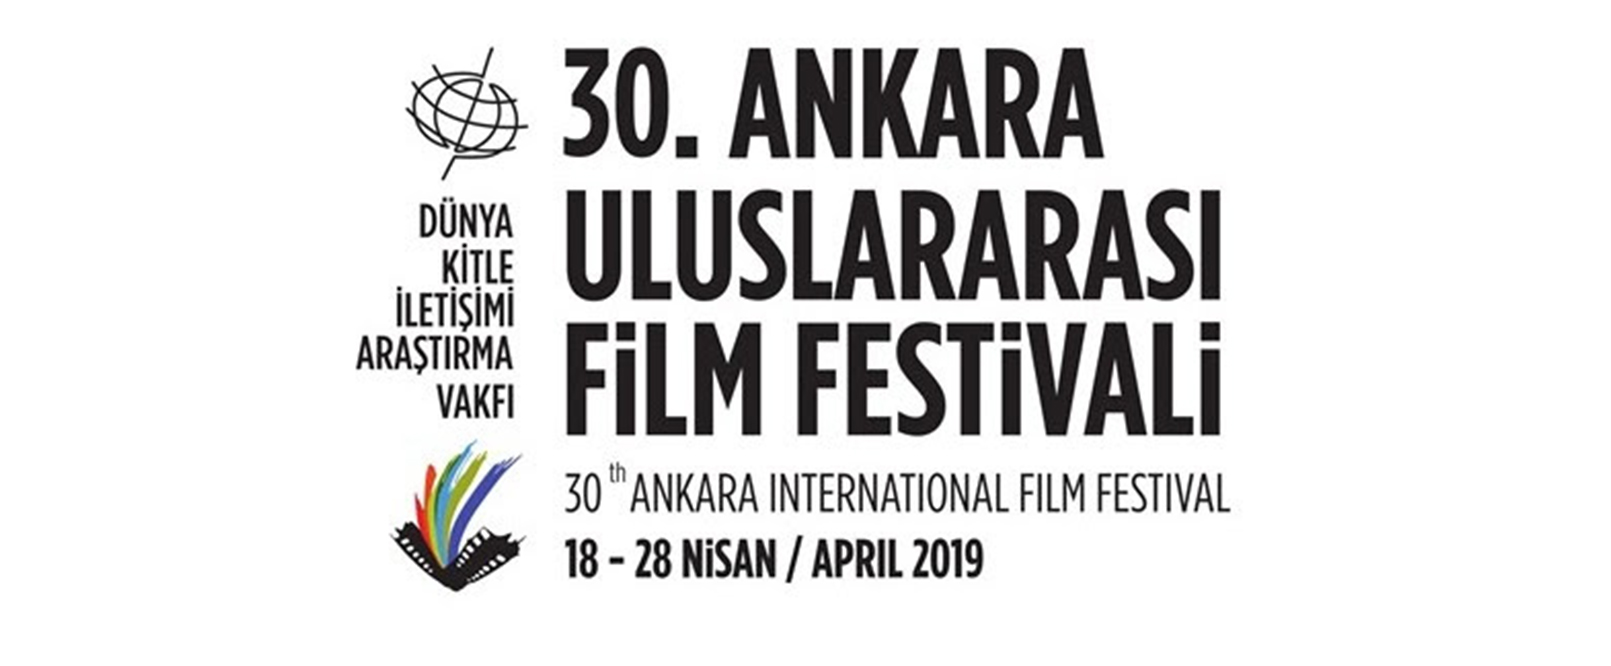 Ankara Uluslararası Film Festivali, 30. yaşına giriyor!